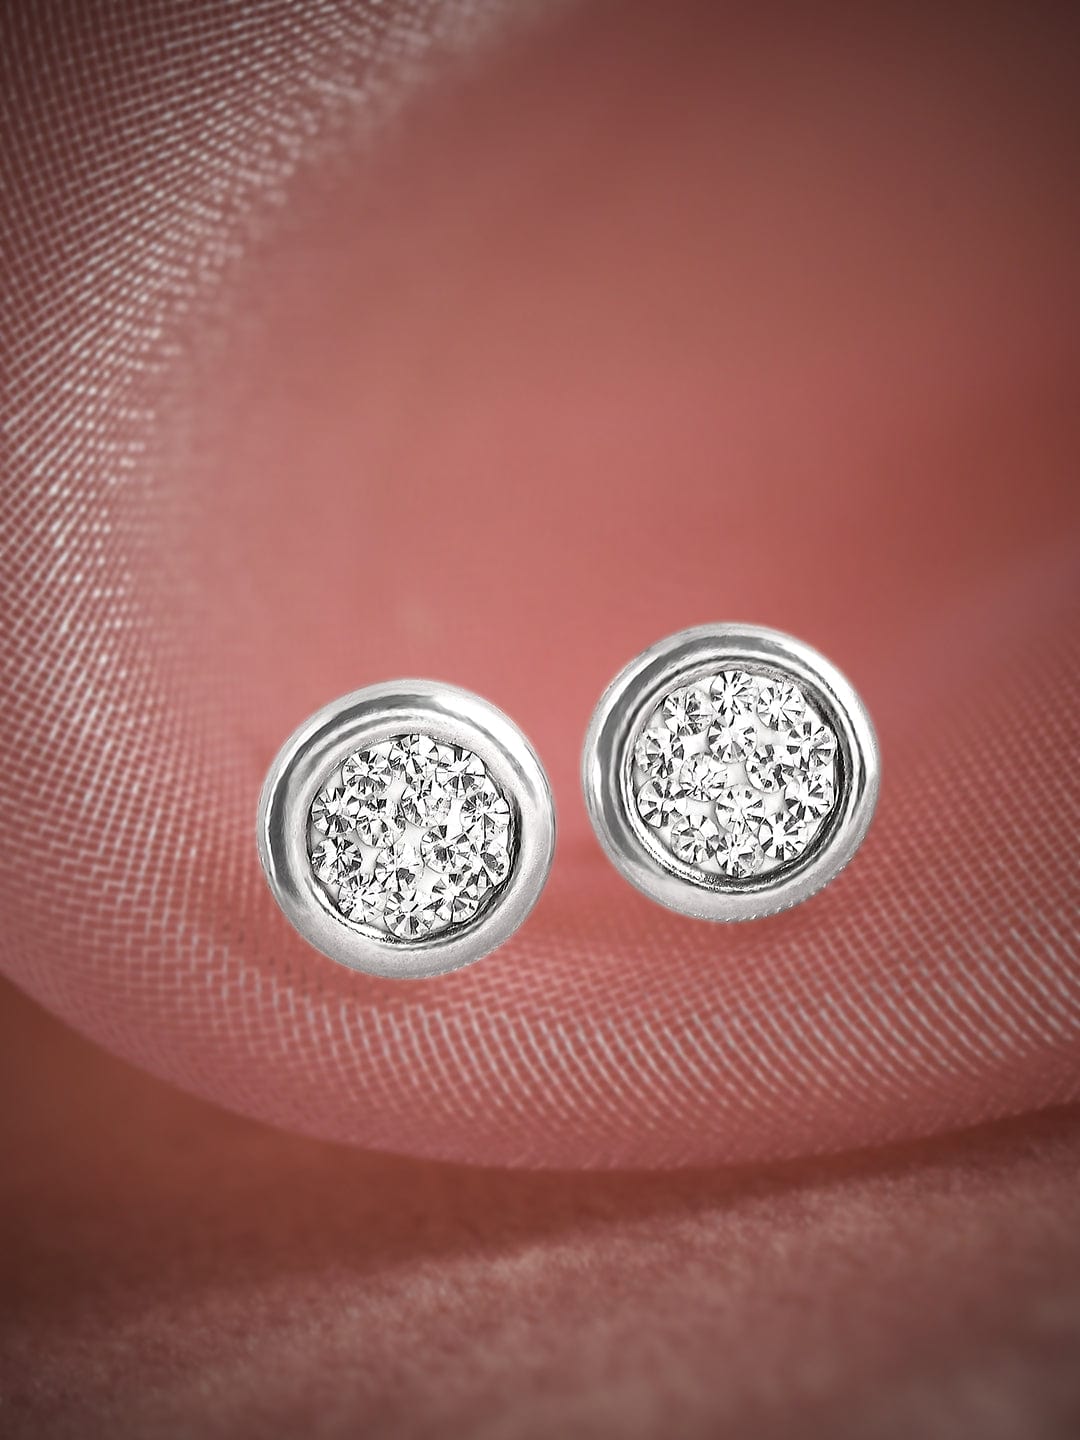 The Zircons In The Bezel - Stud Earrings Earrings